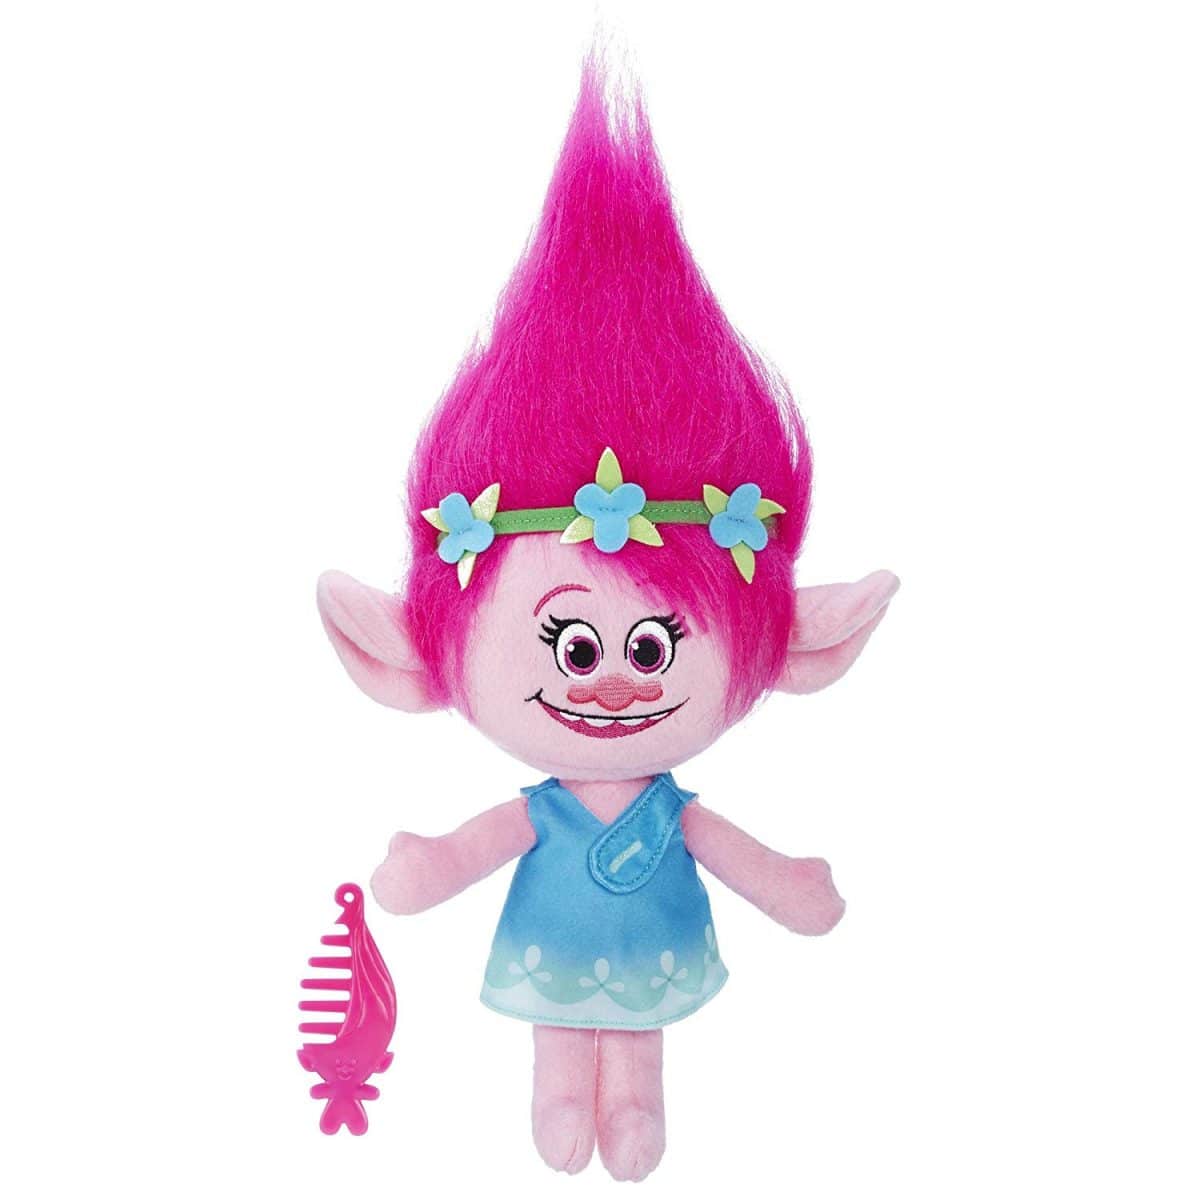 Best Trolls Toys for Kids 2020 LittleOneMag